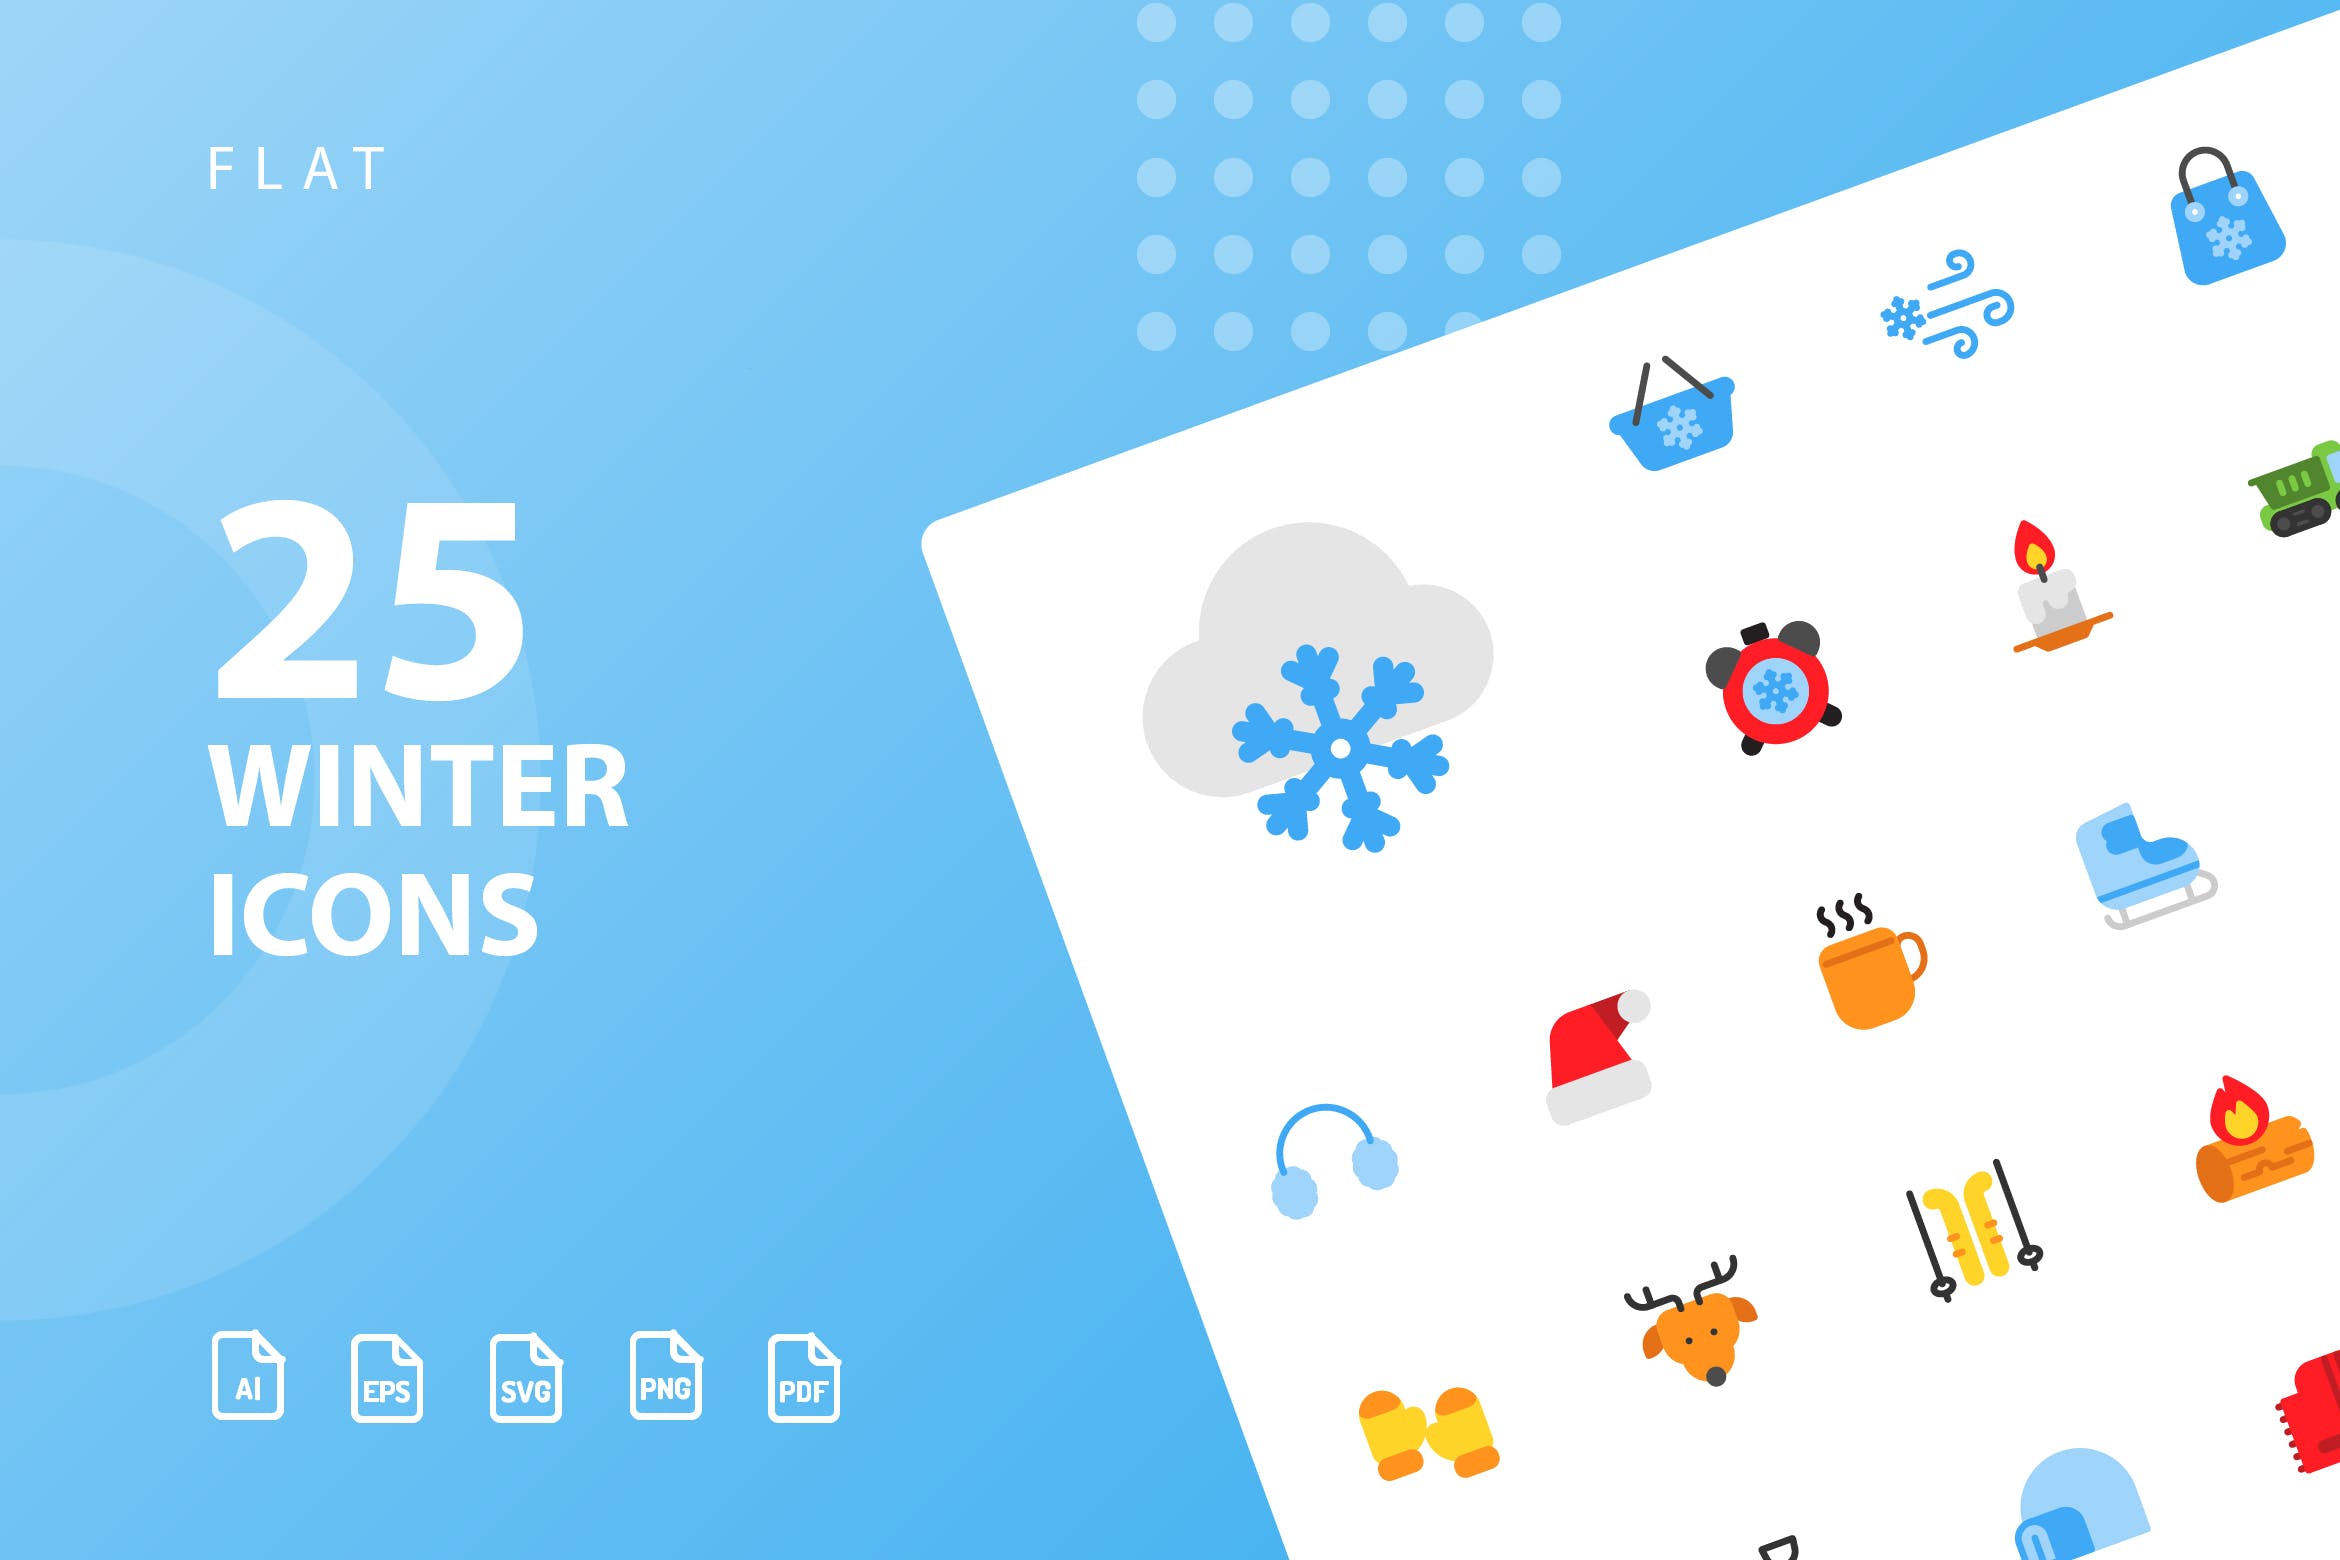 25枚冬天主题扁平设计风格矢量第一素材精选图标v2 Winter Flat Icons插图